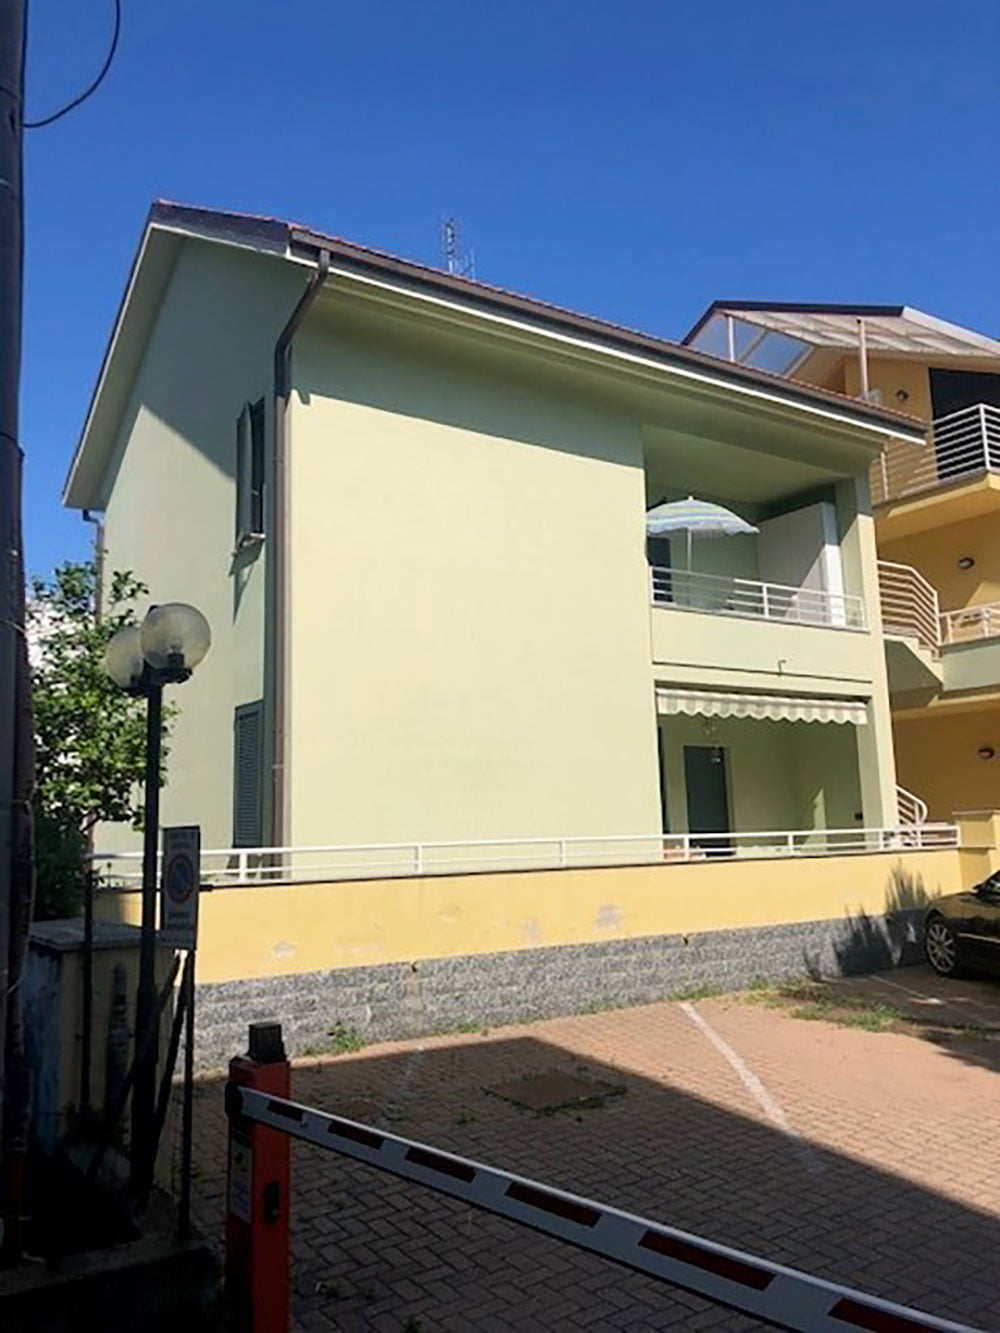 Andora Liguria apartment for sale 46 imp 44072 000